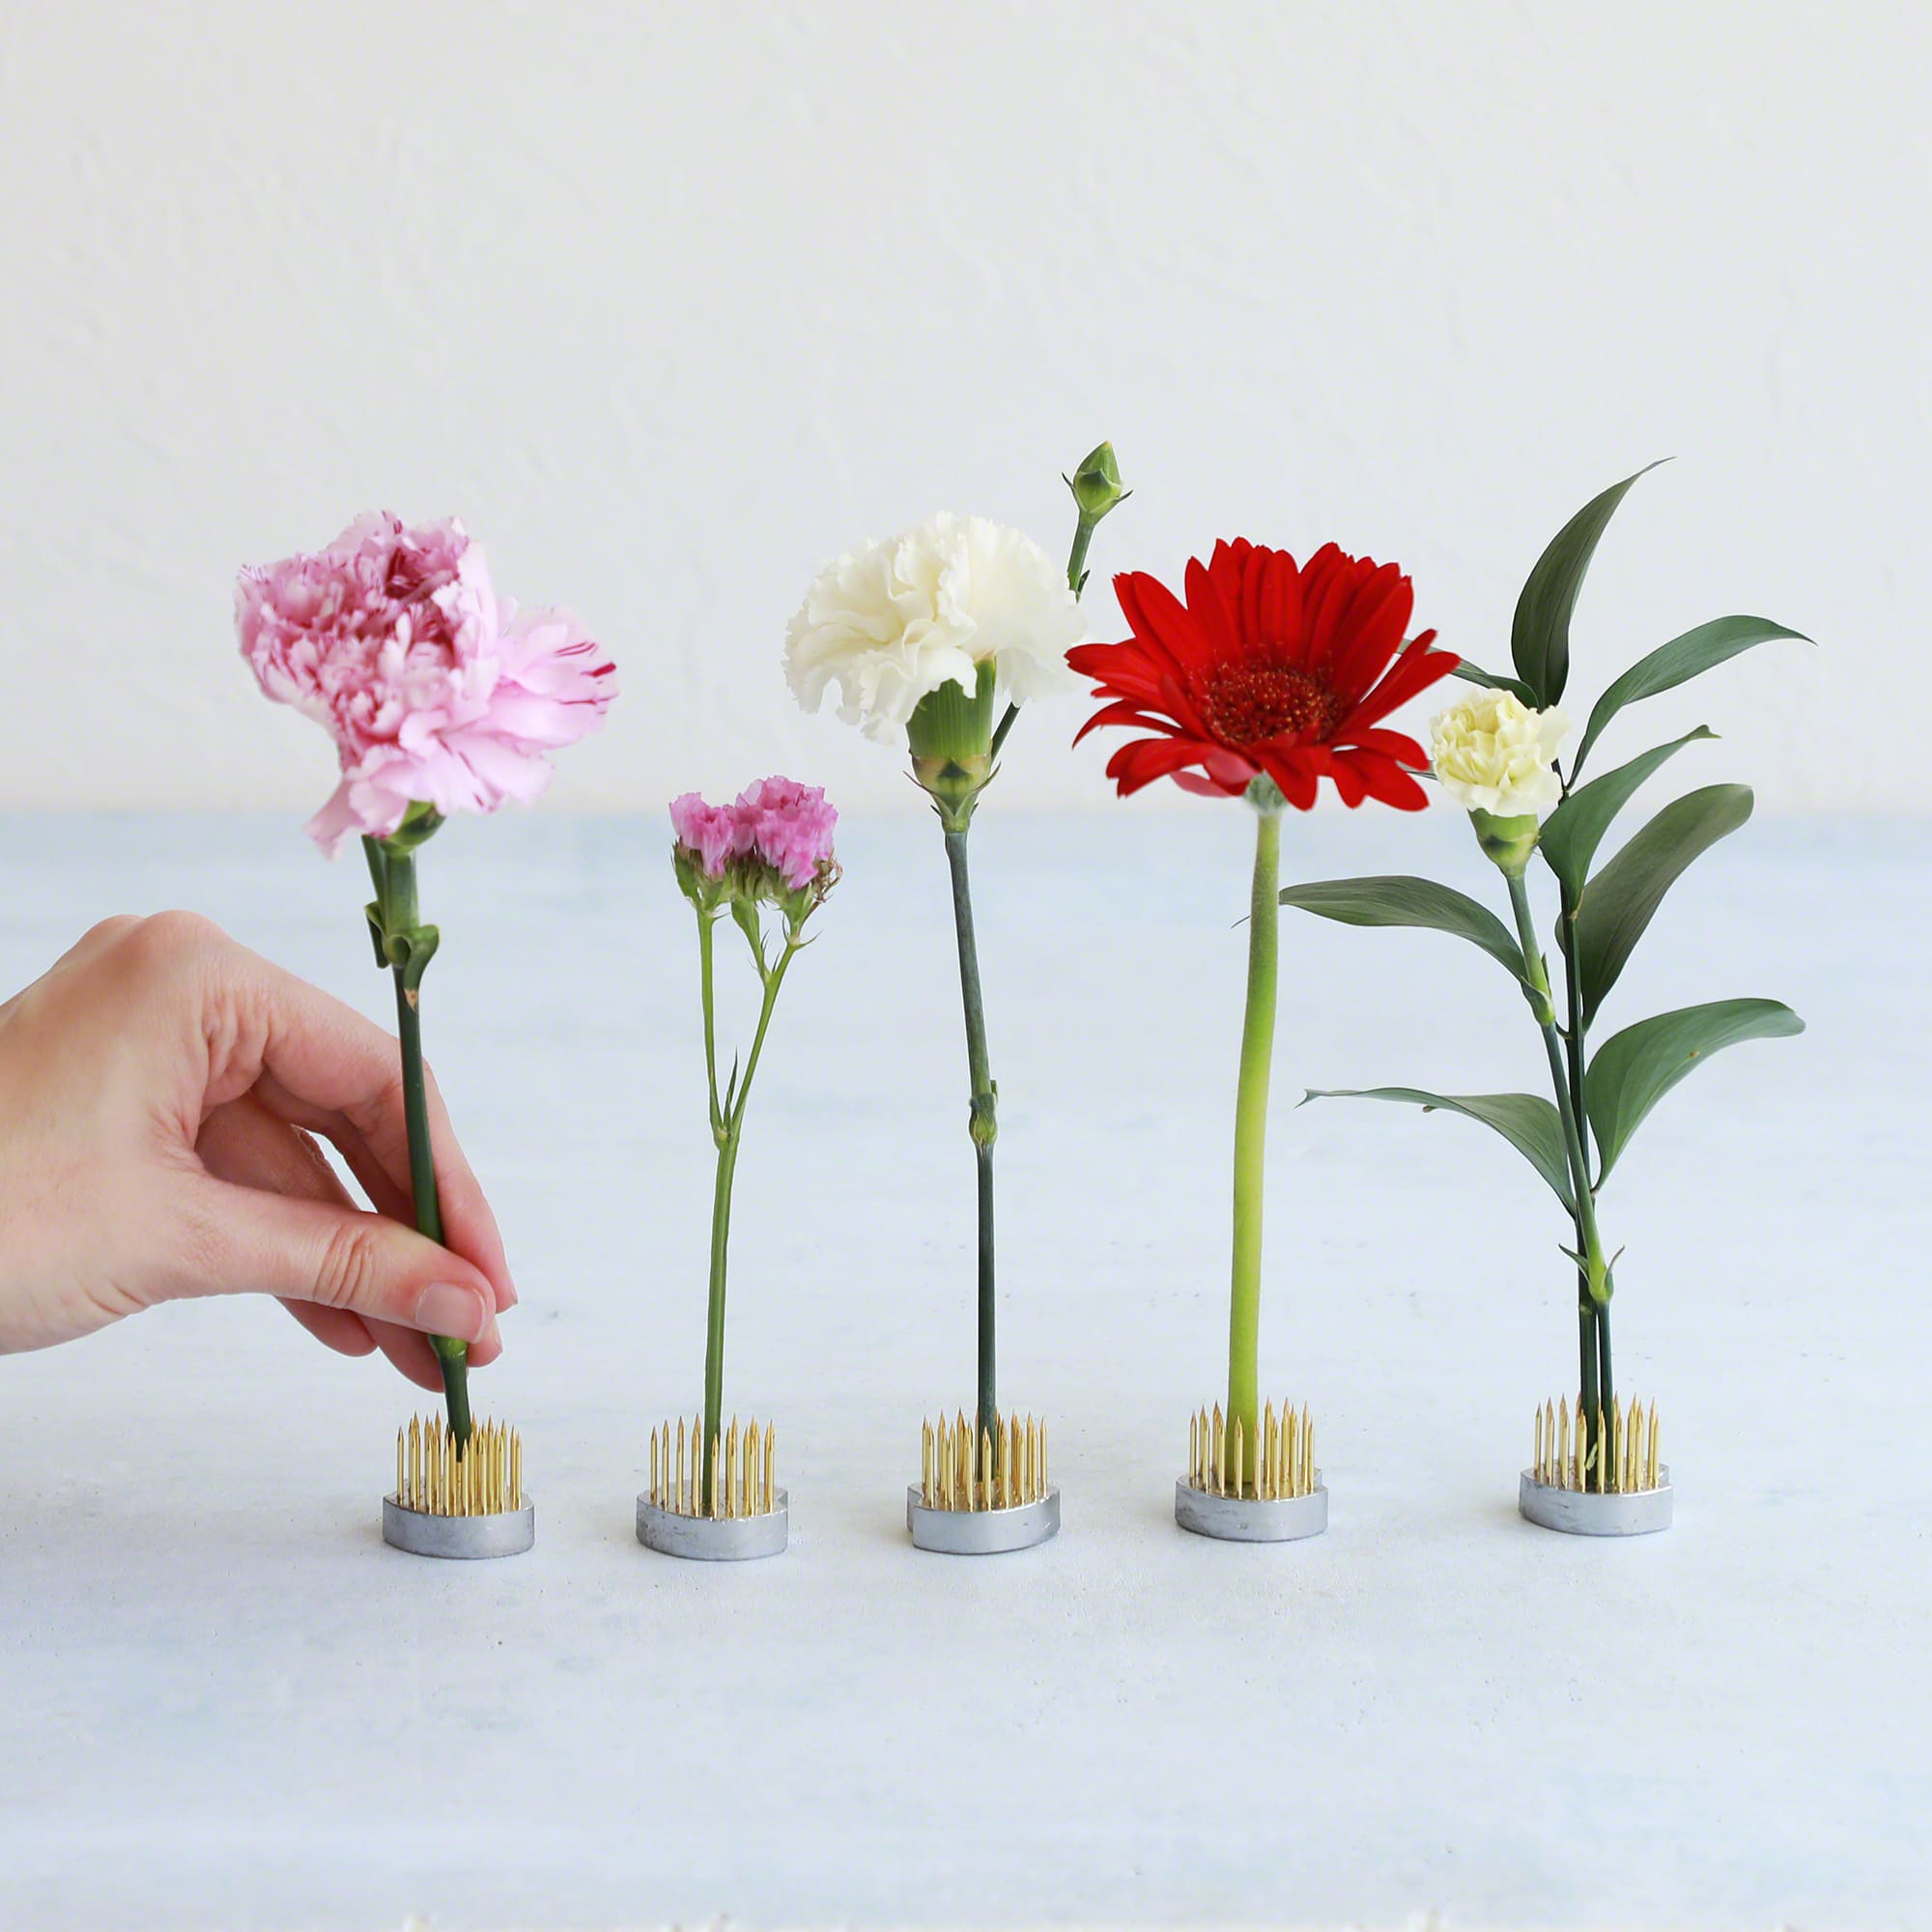 6 Pieces Of Household Beginner Pin Holder Pin Flower Arrangement Kenzan Flower  Arrangement